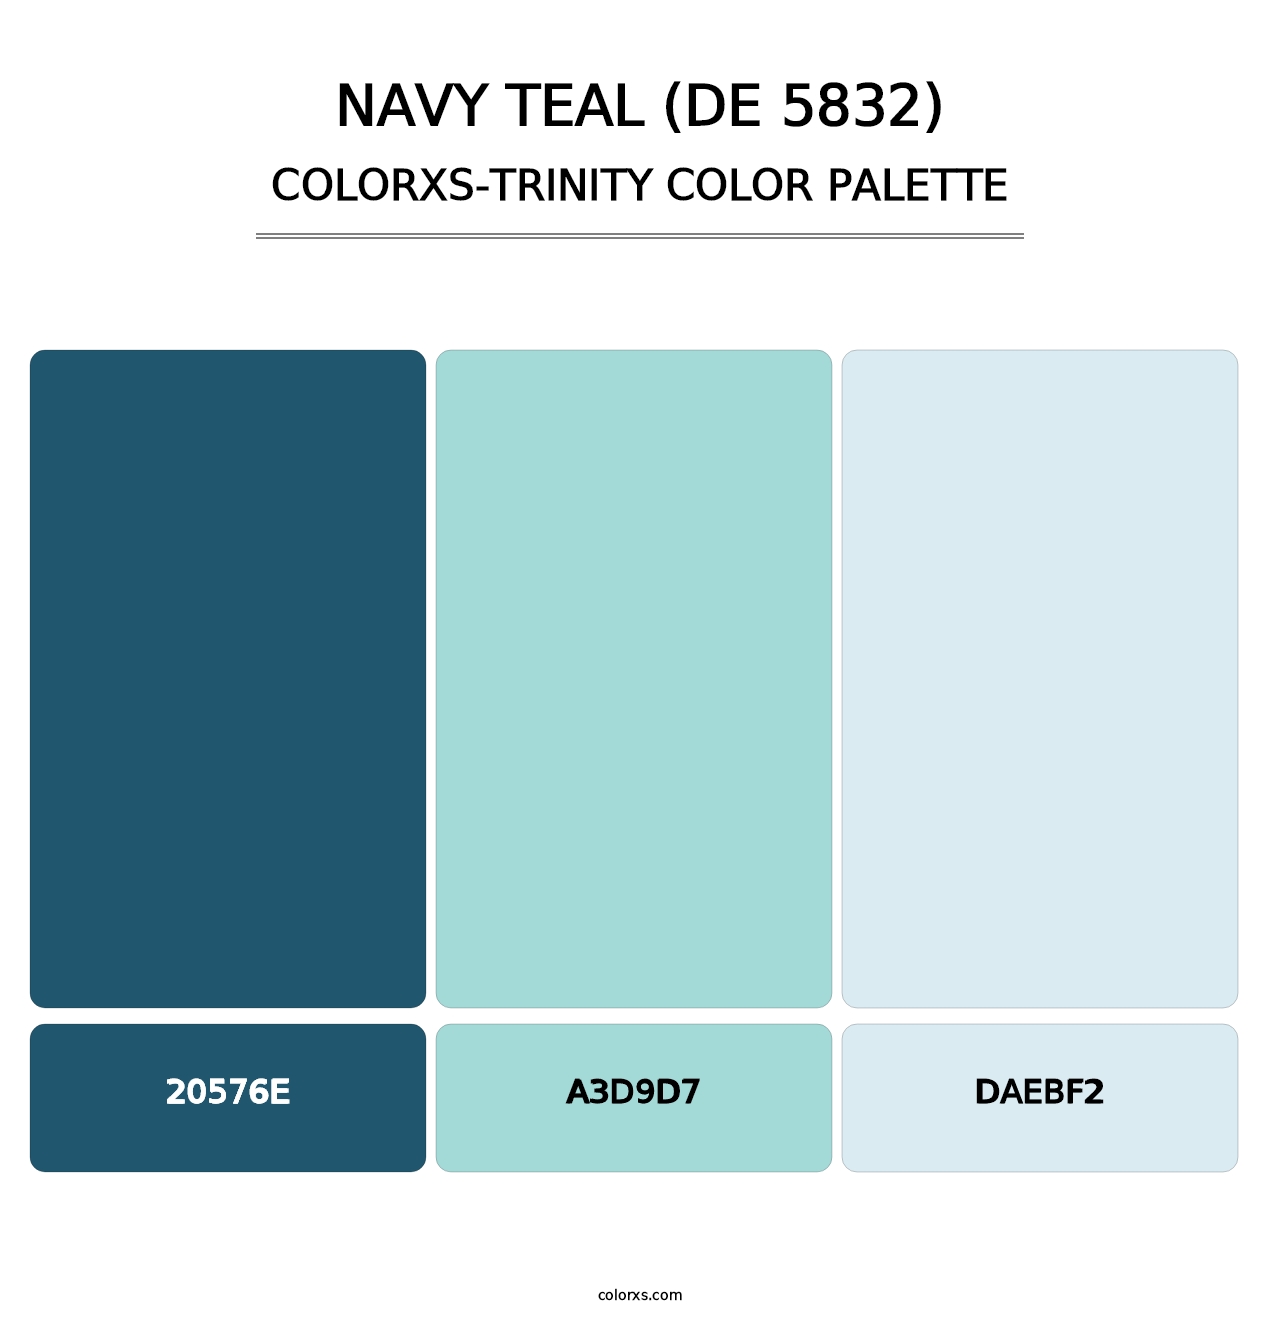 Navy Teal (DE 5832) - Colorxs Trinity Palette